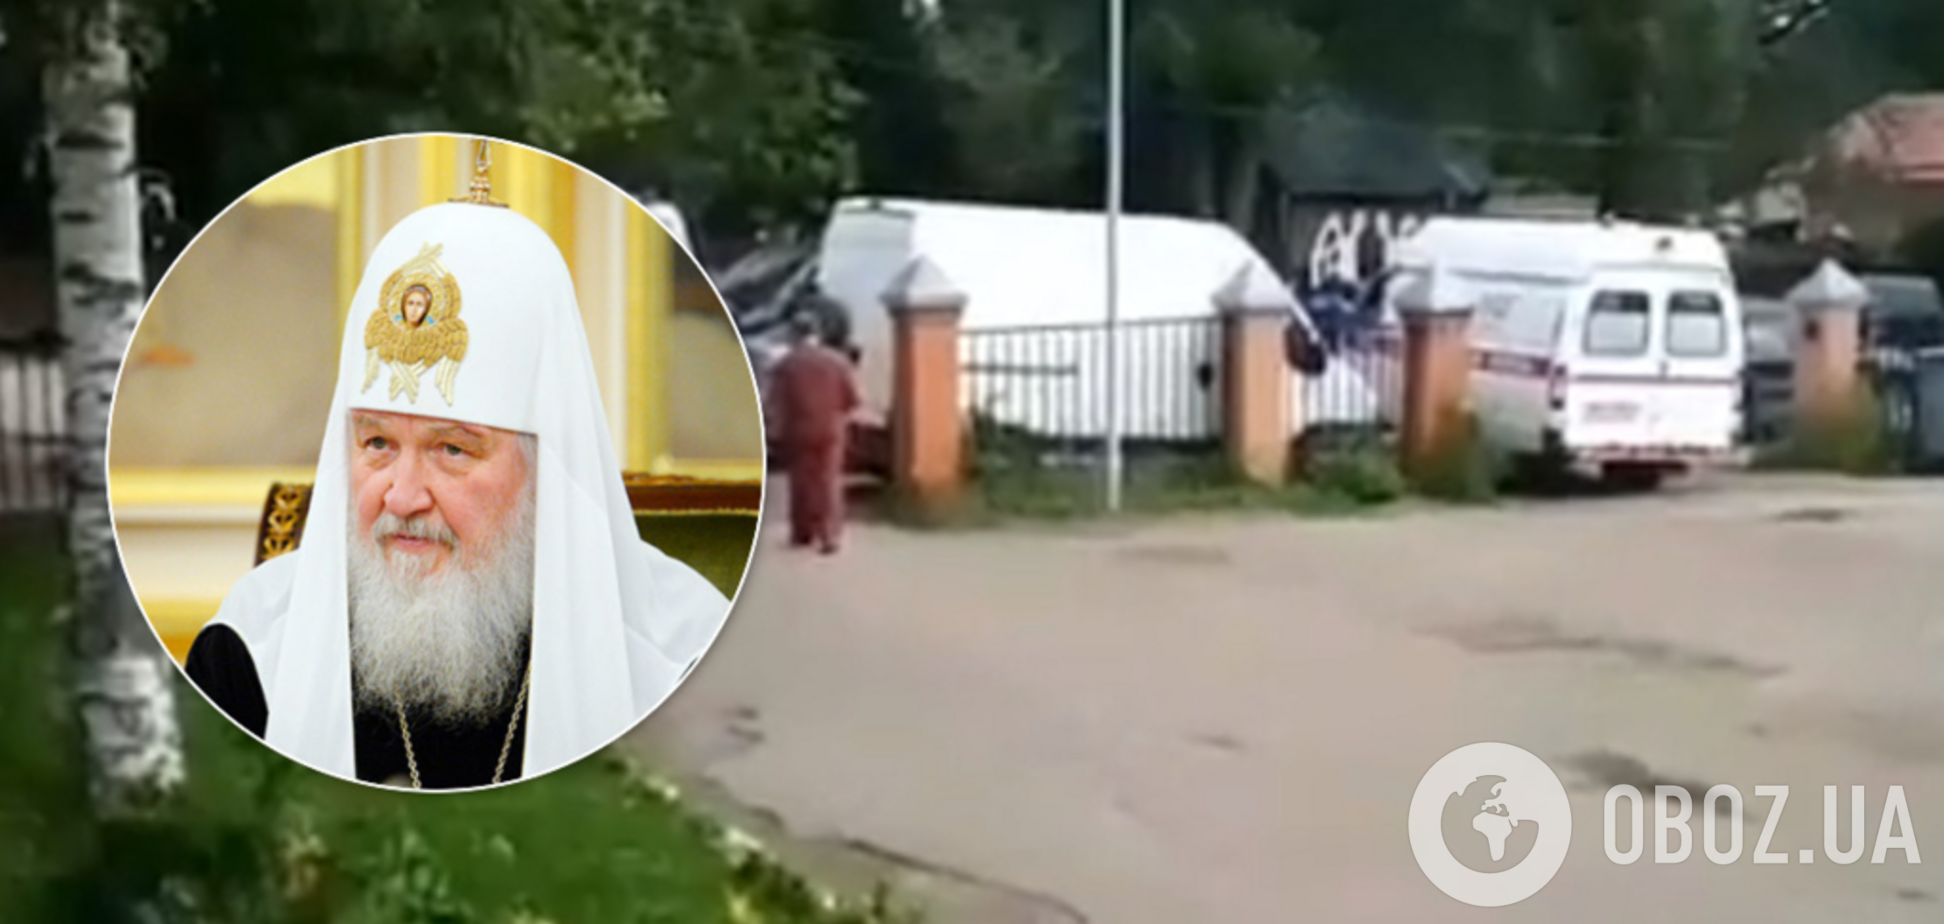 Патриарх Кирилл устроил коллапс в Подмосковье